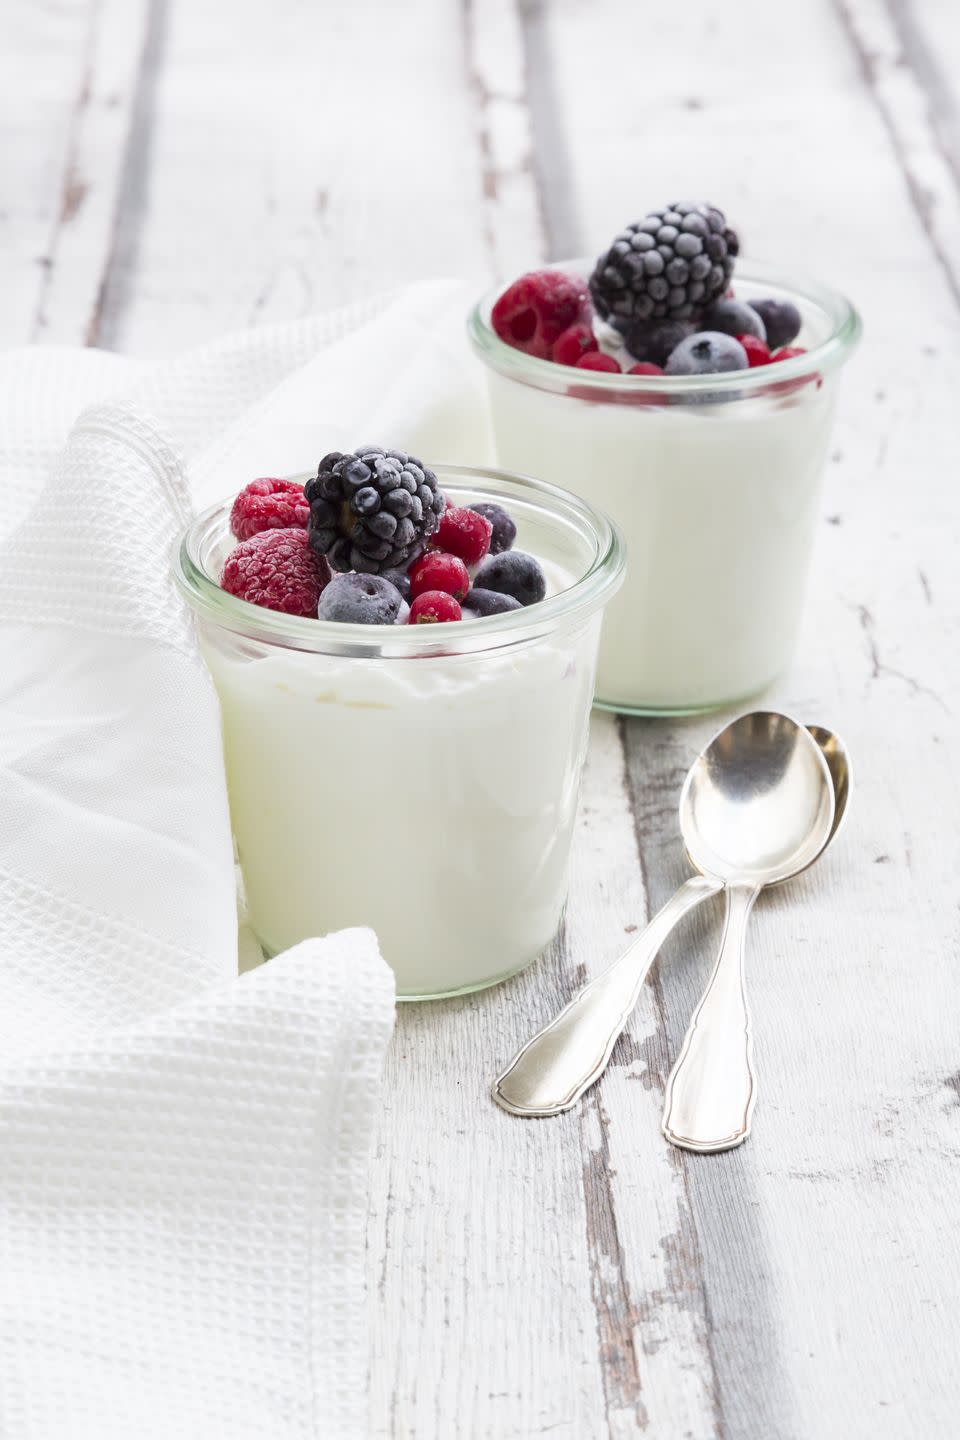 17) Greek Yogurt with Berries